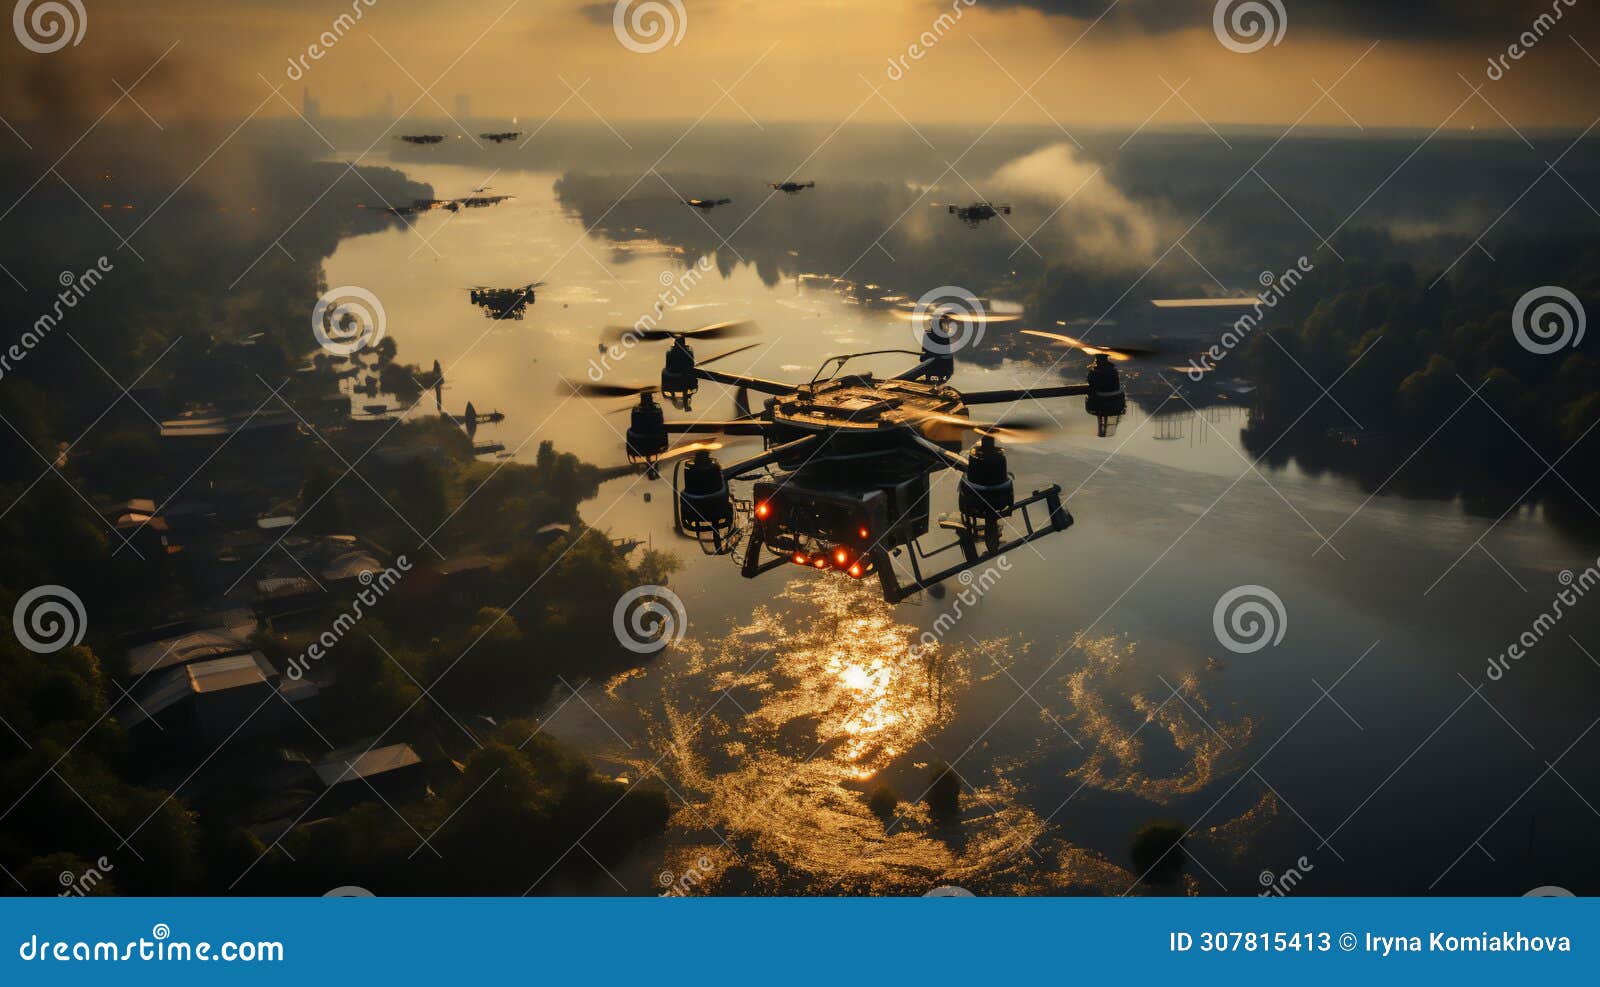 unbemannte flugzeuge fliegen vor dem hintergrund einer brennenden stadt